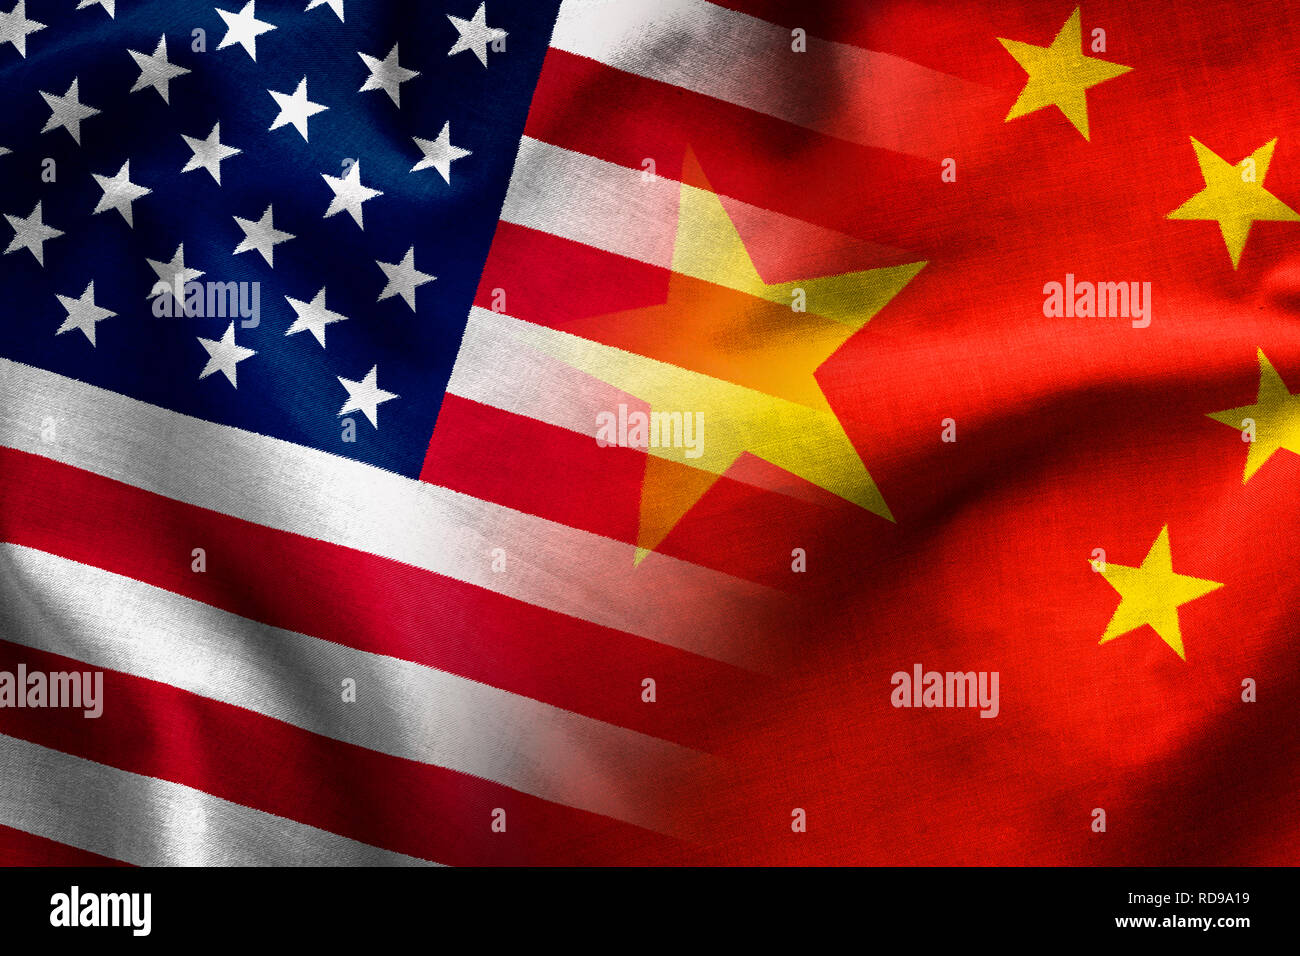 Compuesto de las banderas de la República Popular de China y de las barras y las estrellas de los Estados Unidos de América Foto de stock